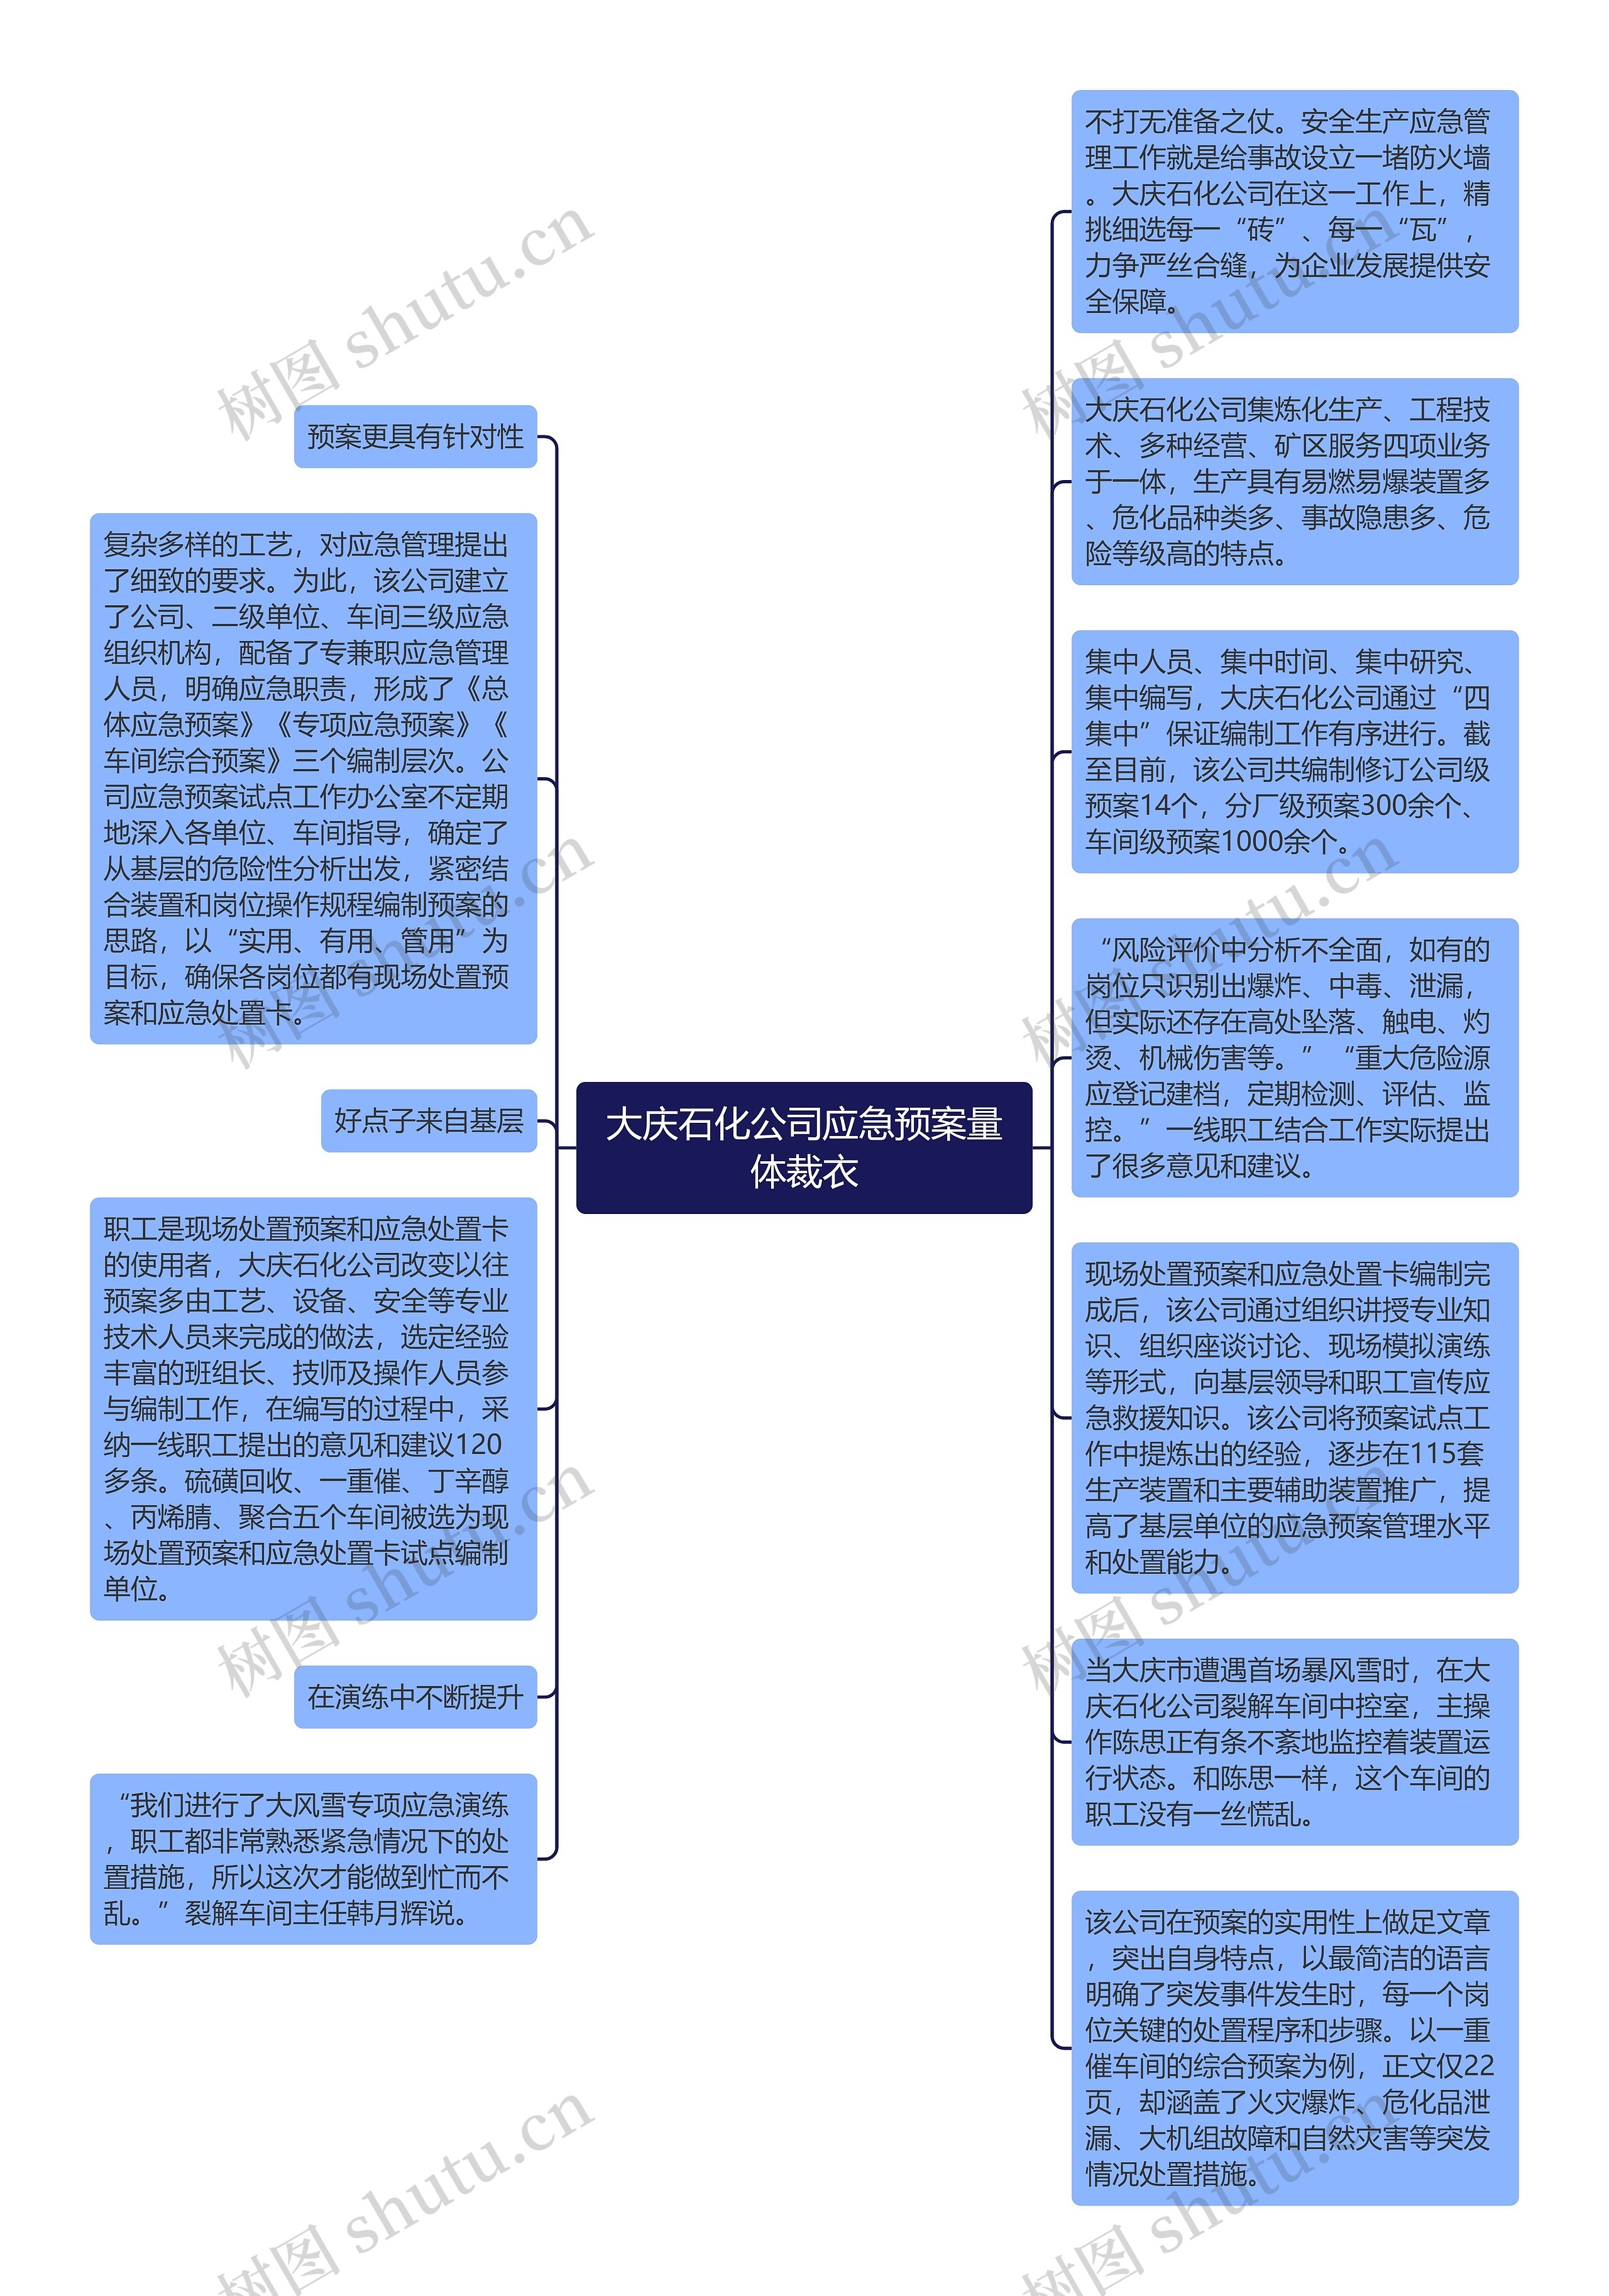 大庆石化公司应急预案量体裁衣思维导图